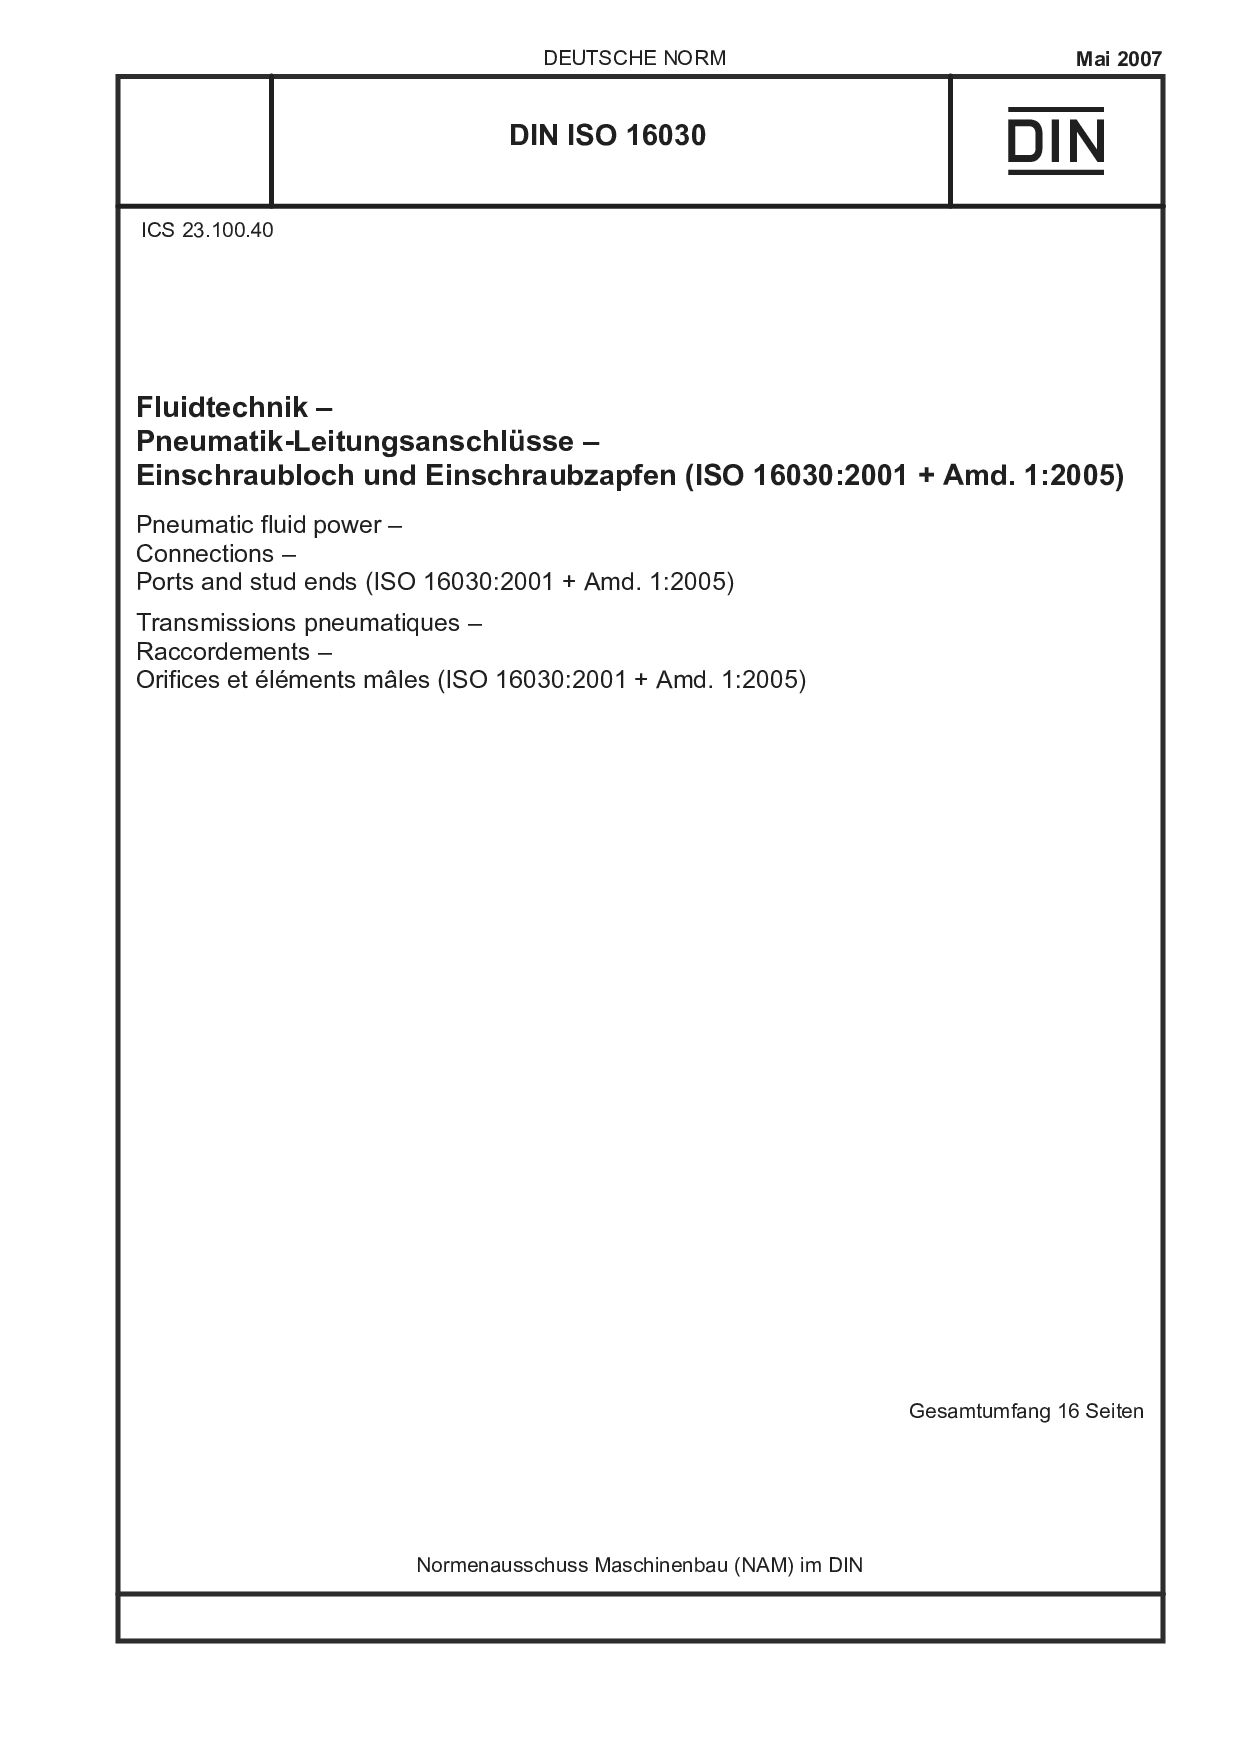 DIN ISO 16030:2007封面图